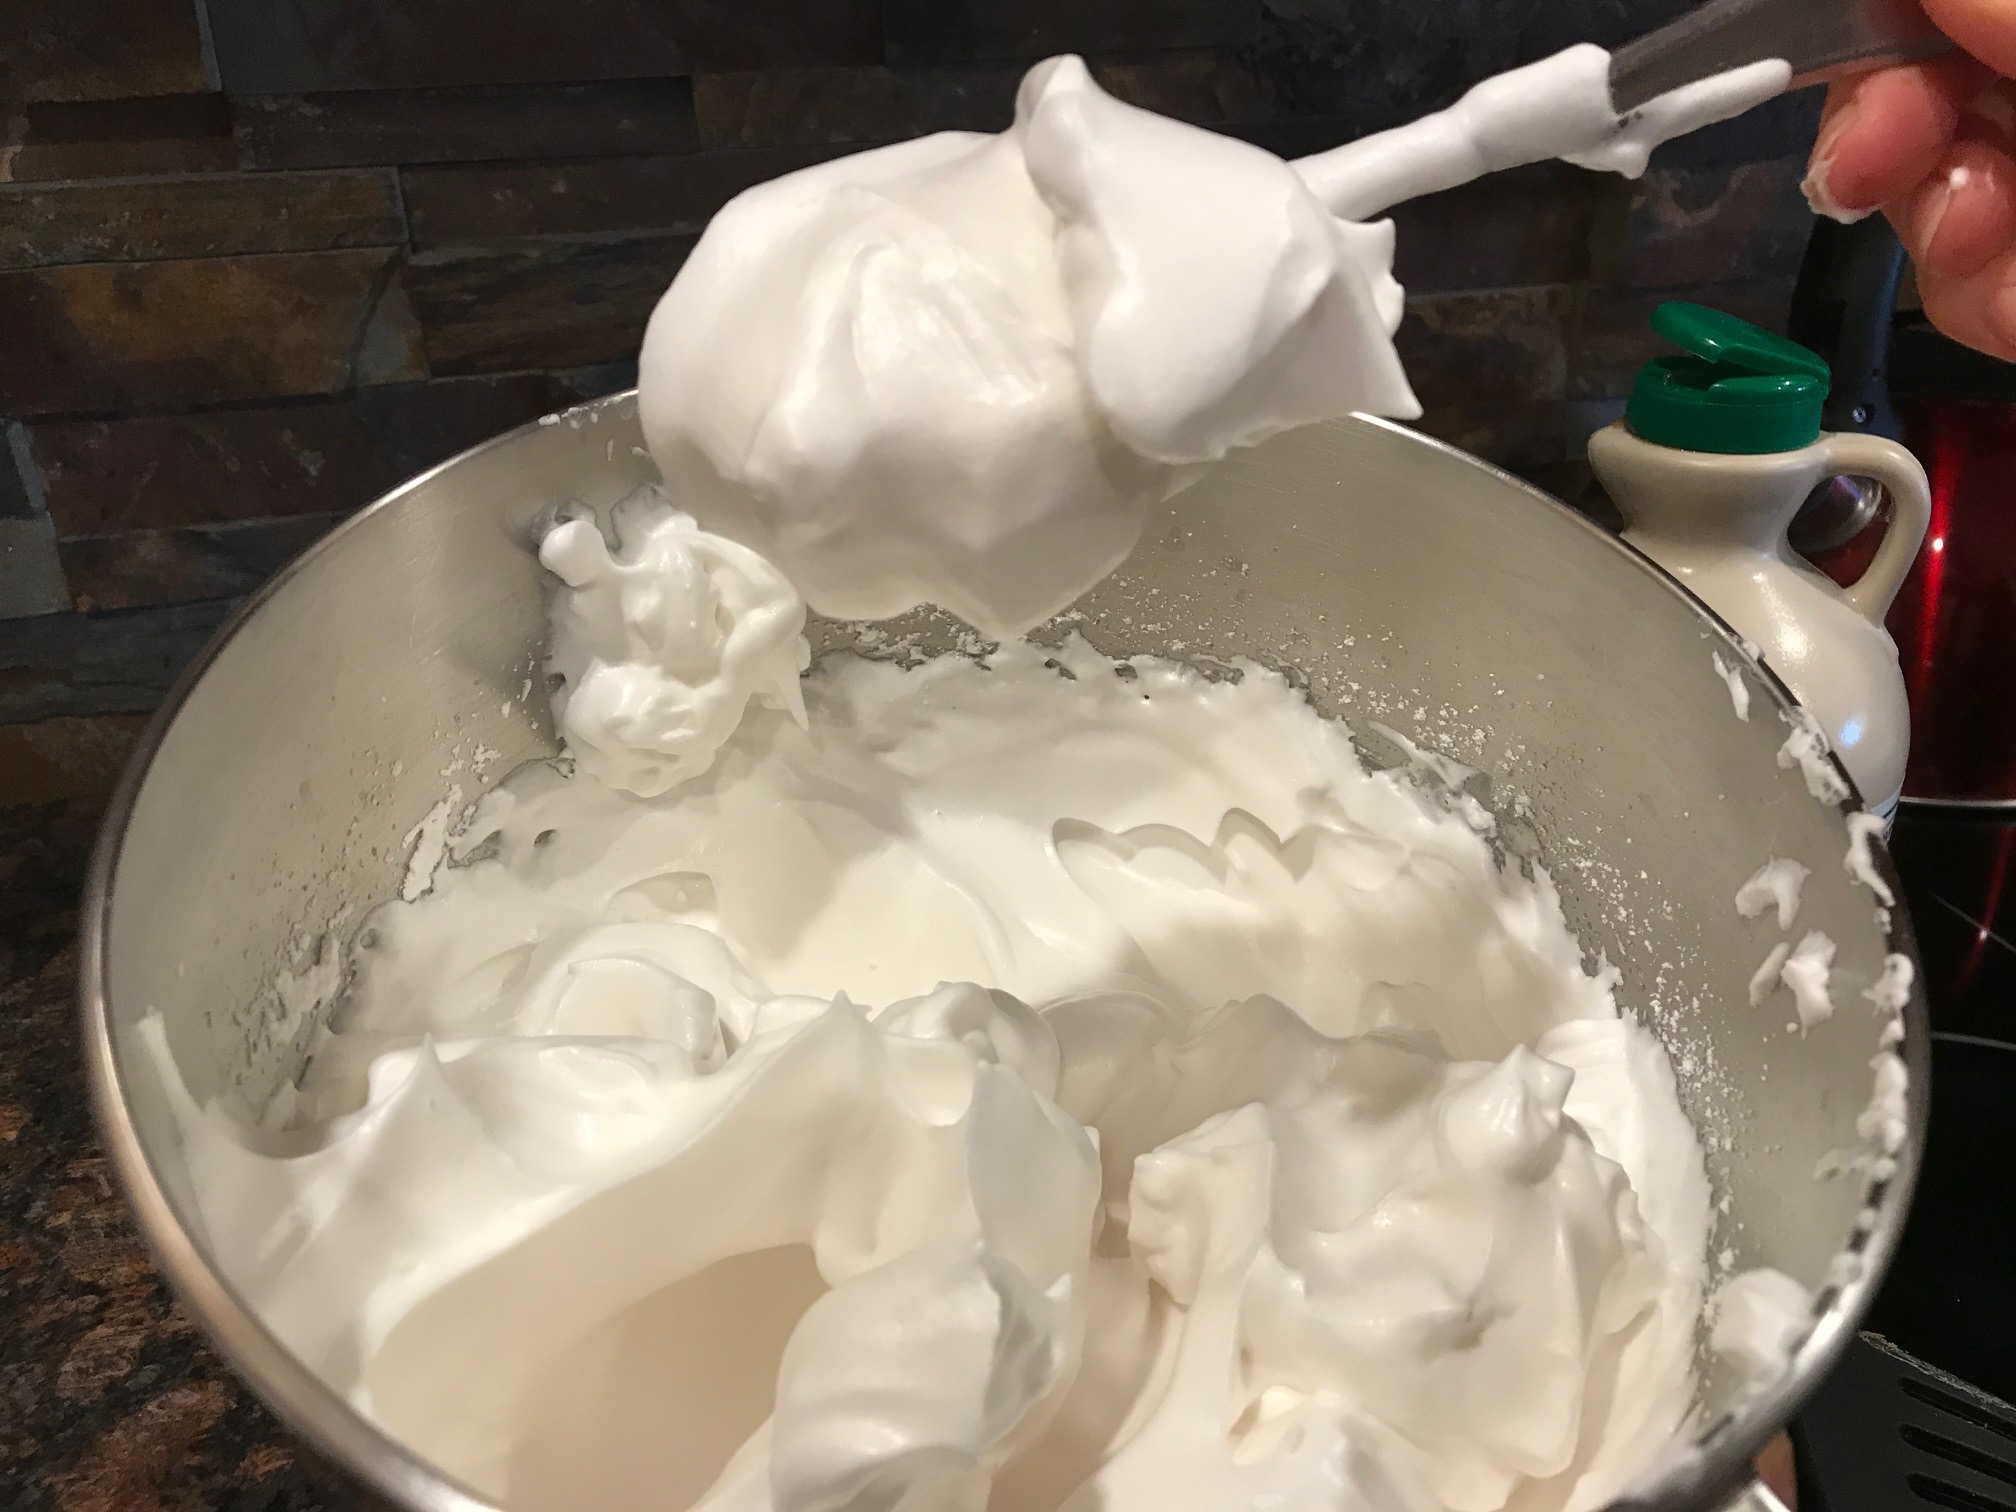 aquafaba whipped cream (canned chickpea liquid)